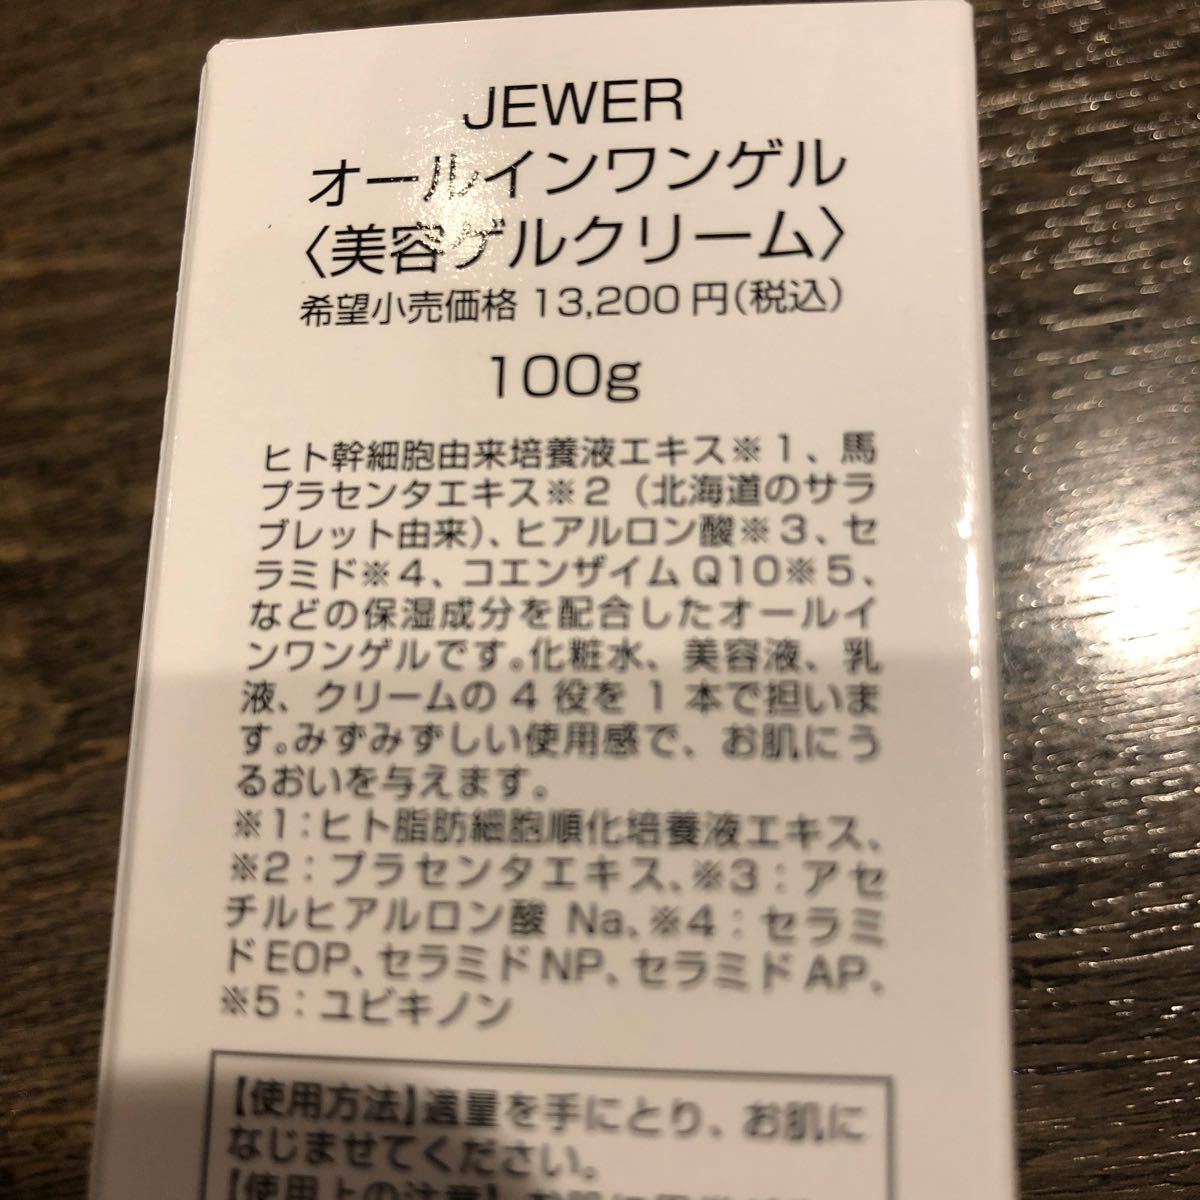 【定価13200円】JEWER [オールインワンクリーム] ヒト幹細胞エキス配合 (100g)